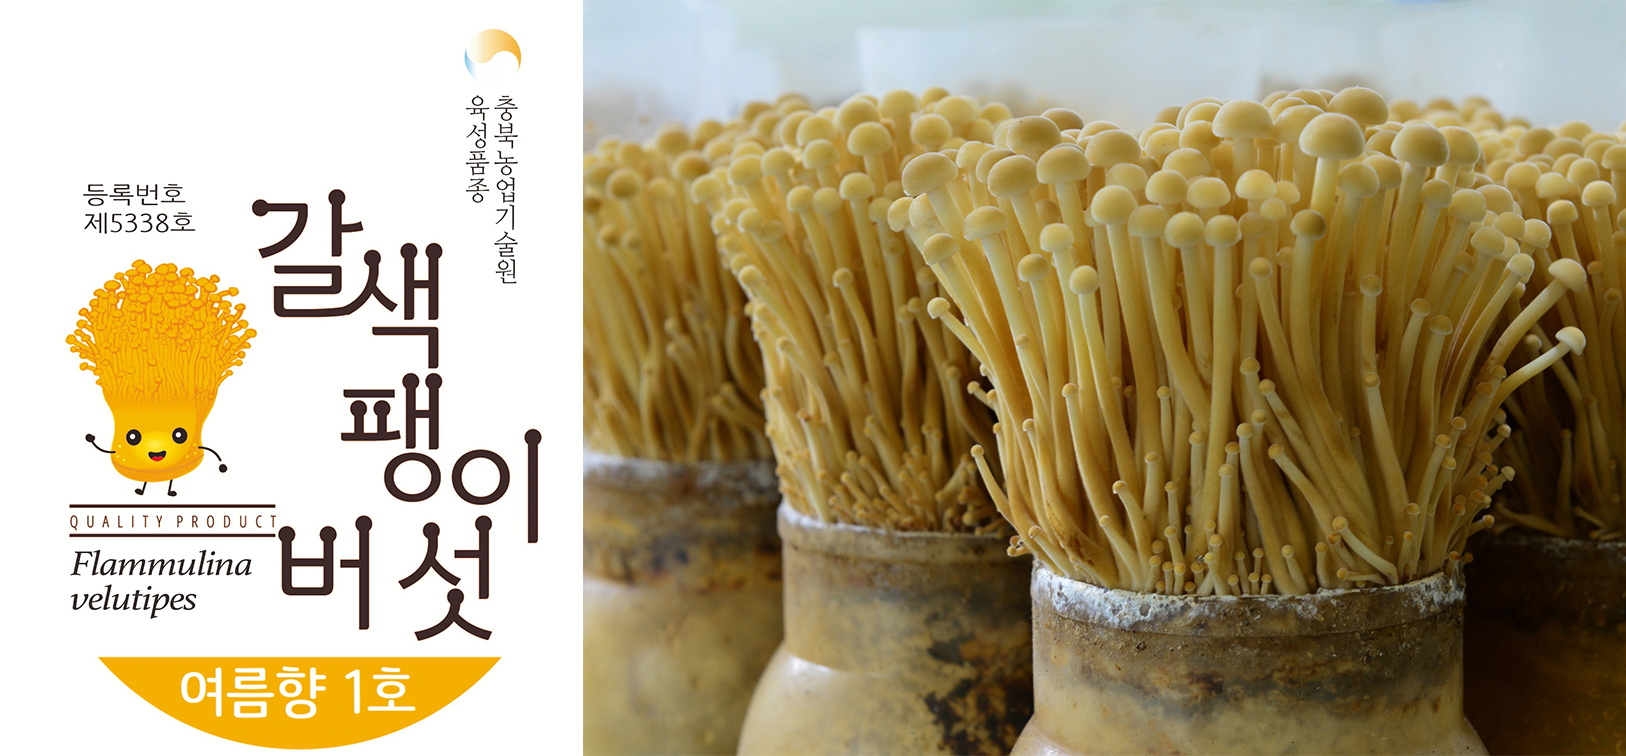 충북농기원, 갈색 팽이버섯 포장 디자인 특허출원